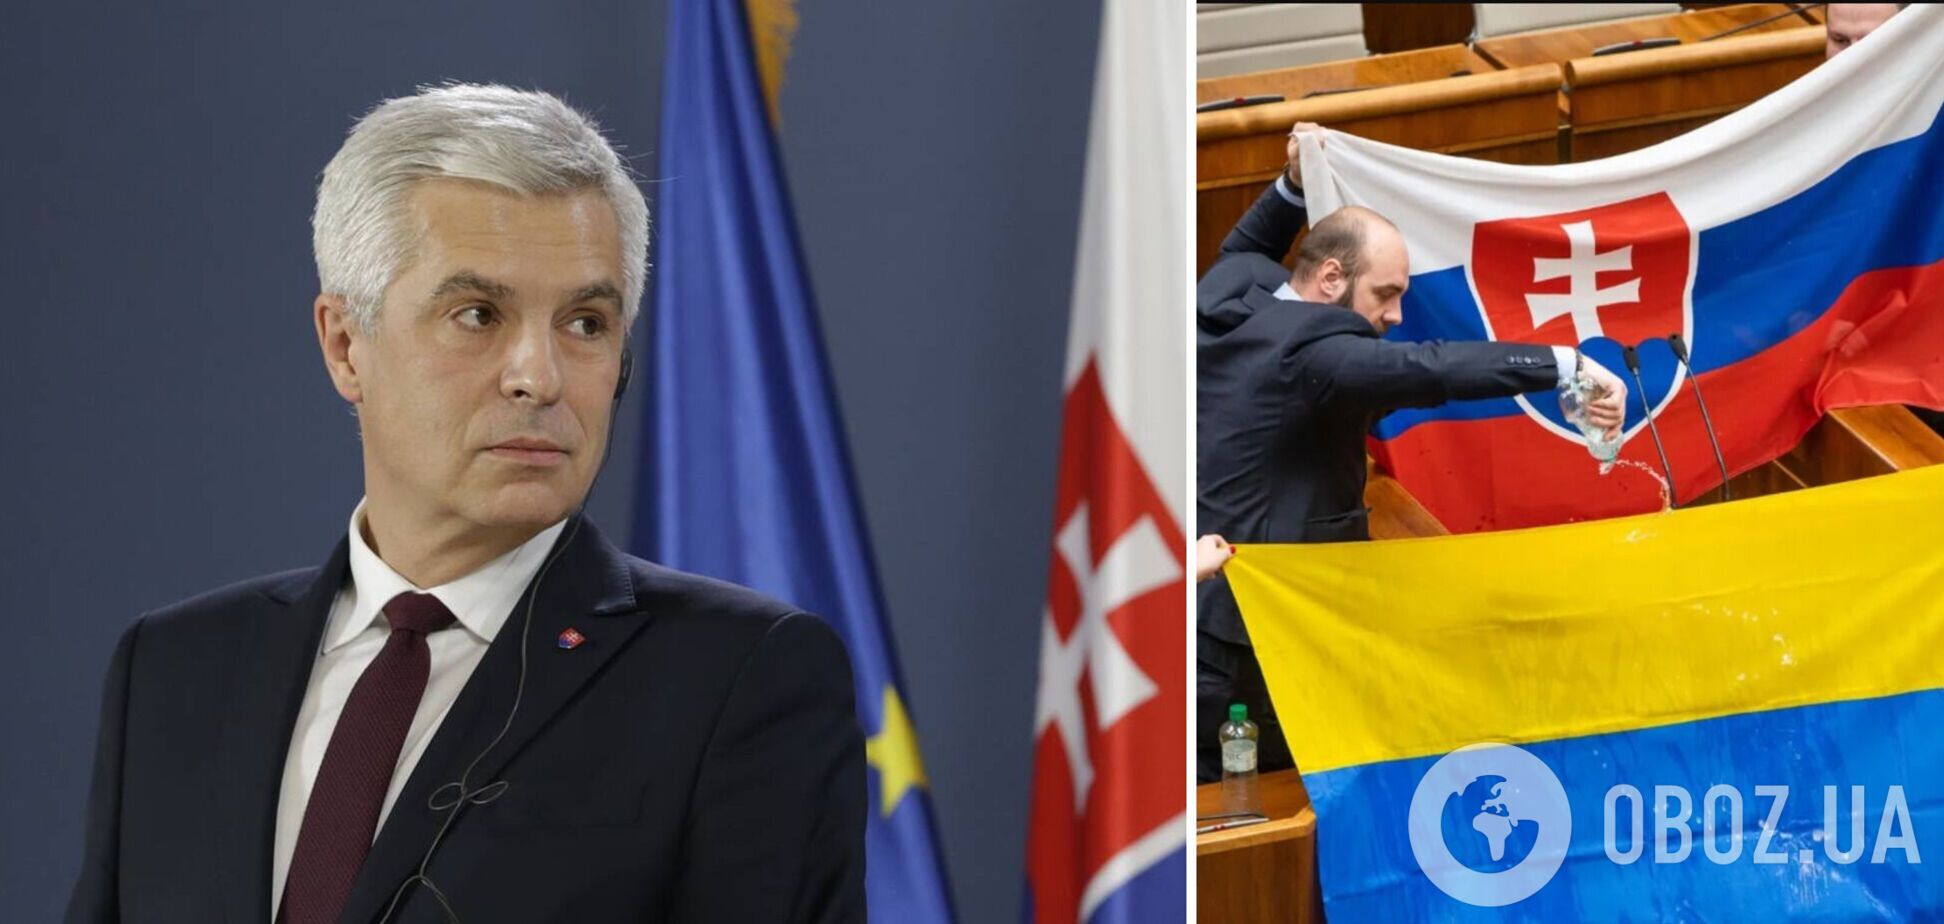 'Мені шкода і соромно, огидне видовище': глава МЗС Словаччини перепросив за витівку депутатів з українським прапором